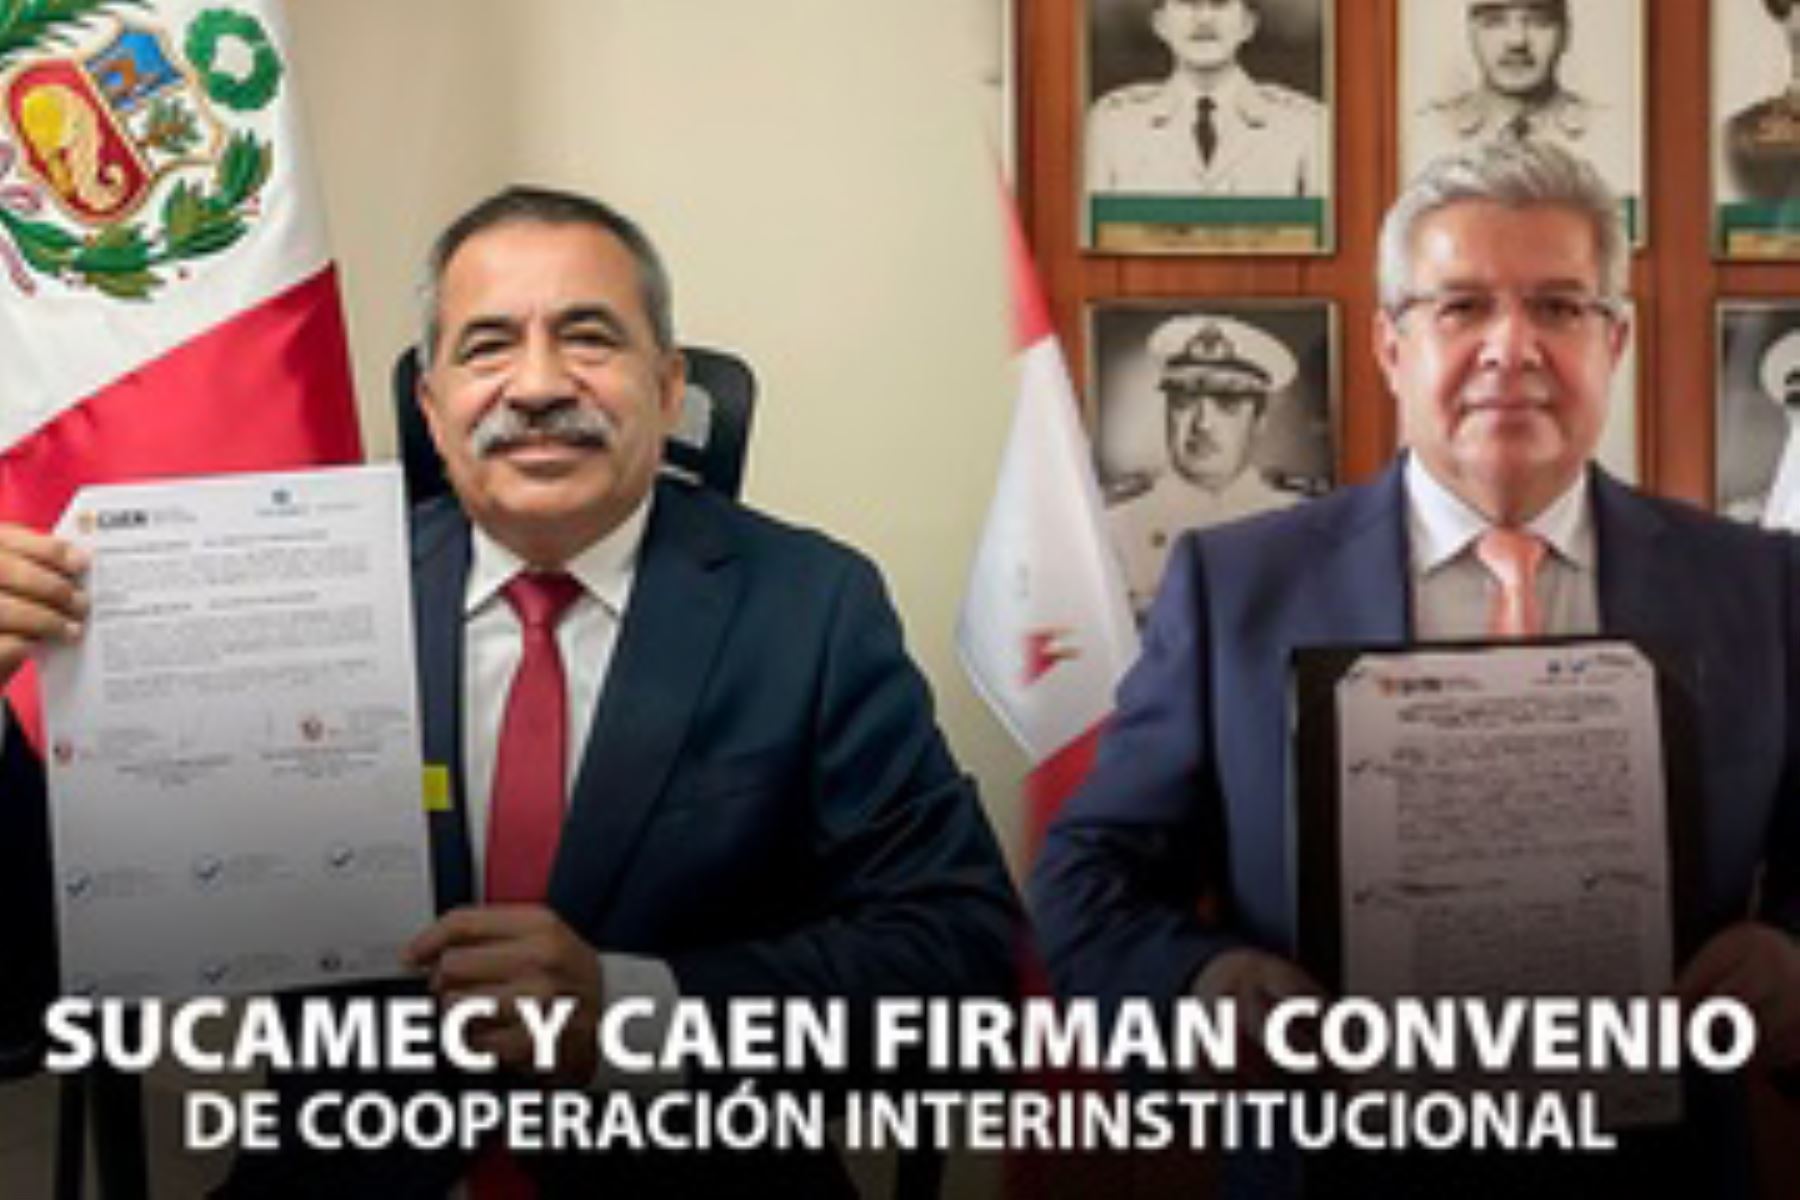 El convenio de cooperación y desarrollo entre Sucamec y el CAEN permitirá desarrollar e implementar proyectos e investigaciones en favor de los objetivos de cada una de las partes. ANDINA/Sucamec